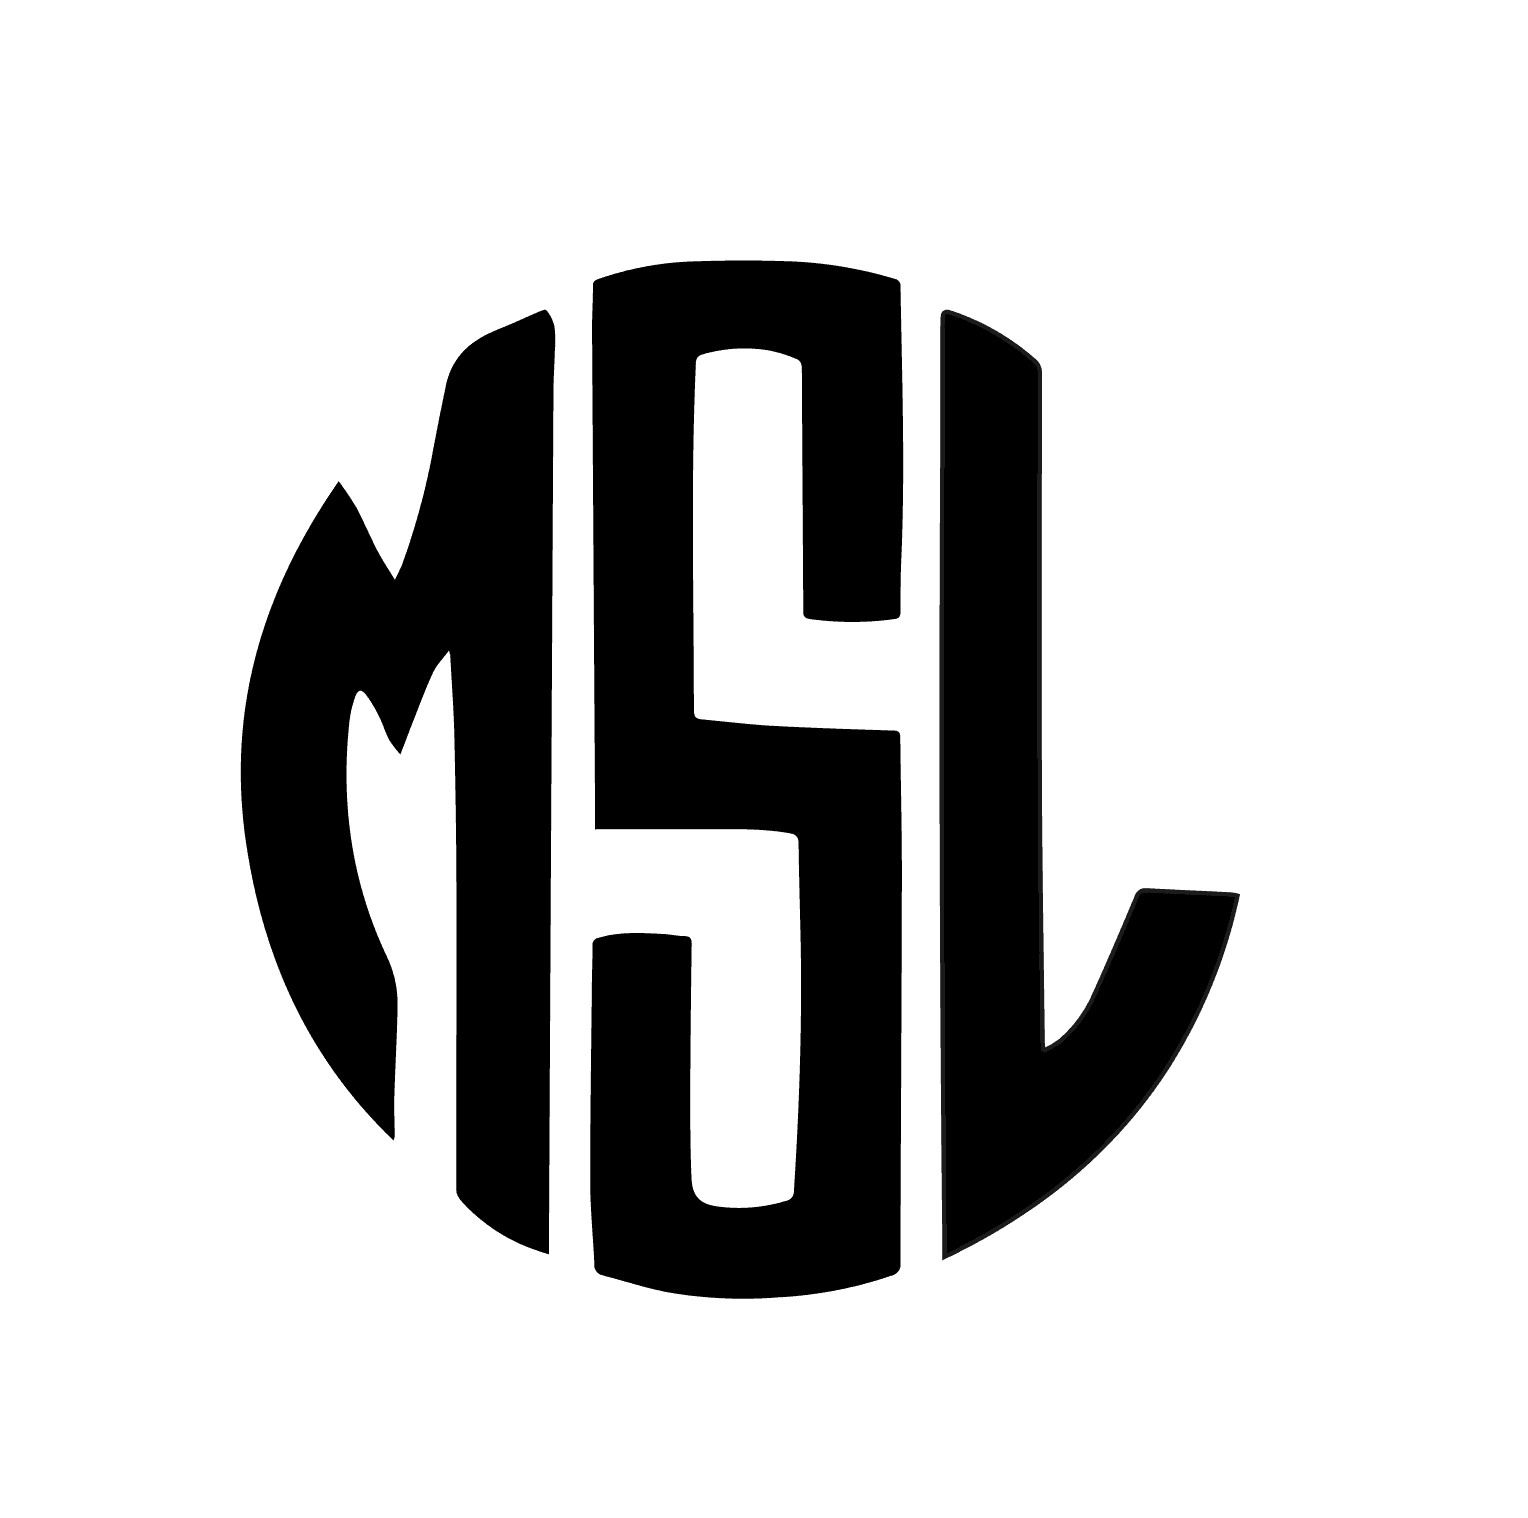 Company logo of Mark Savic Legal